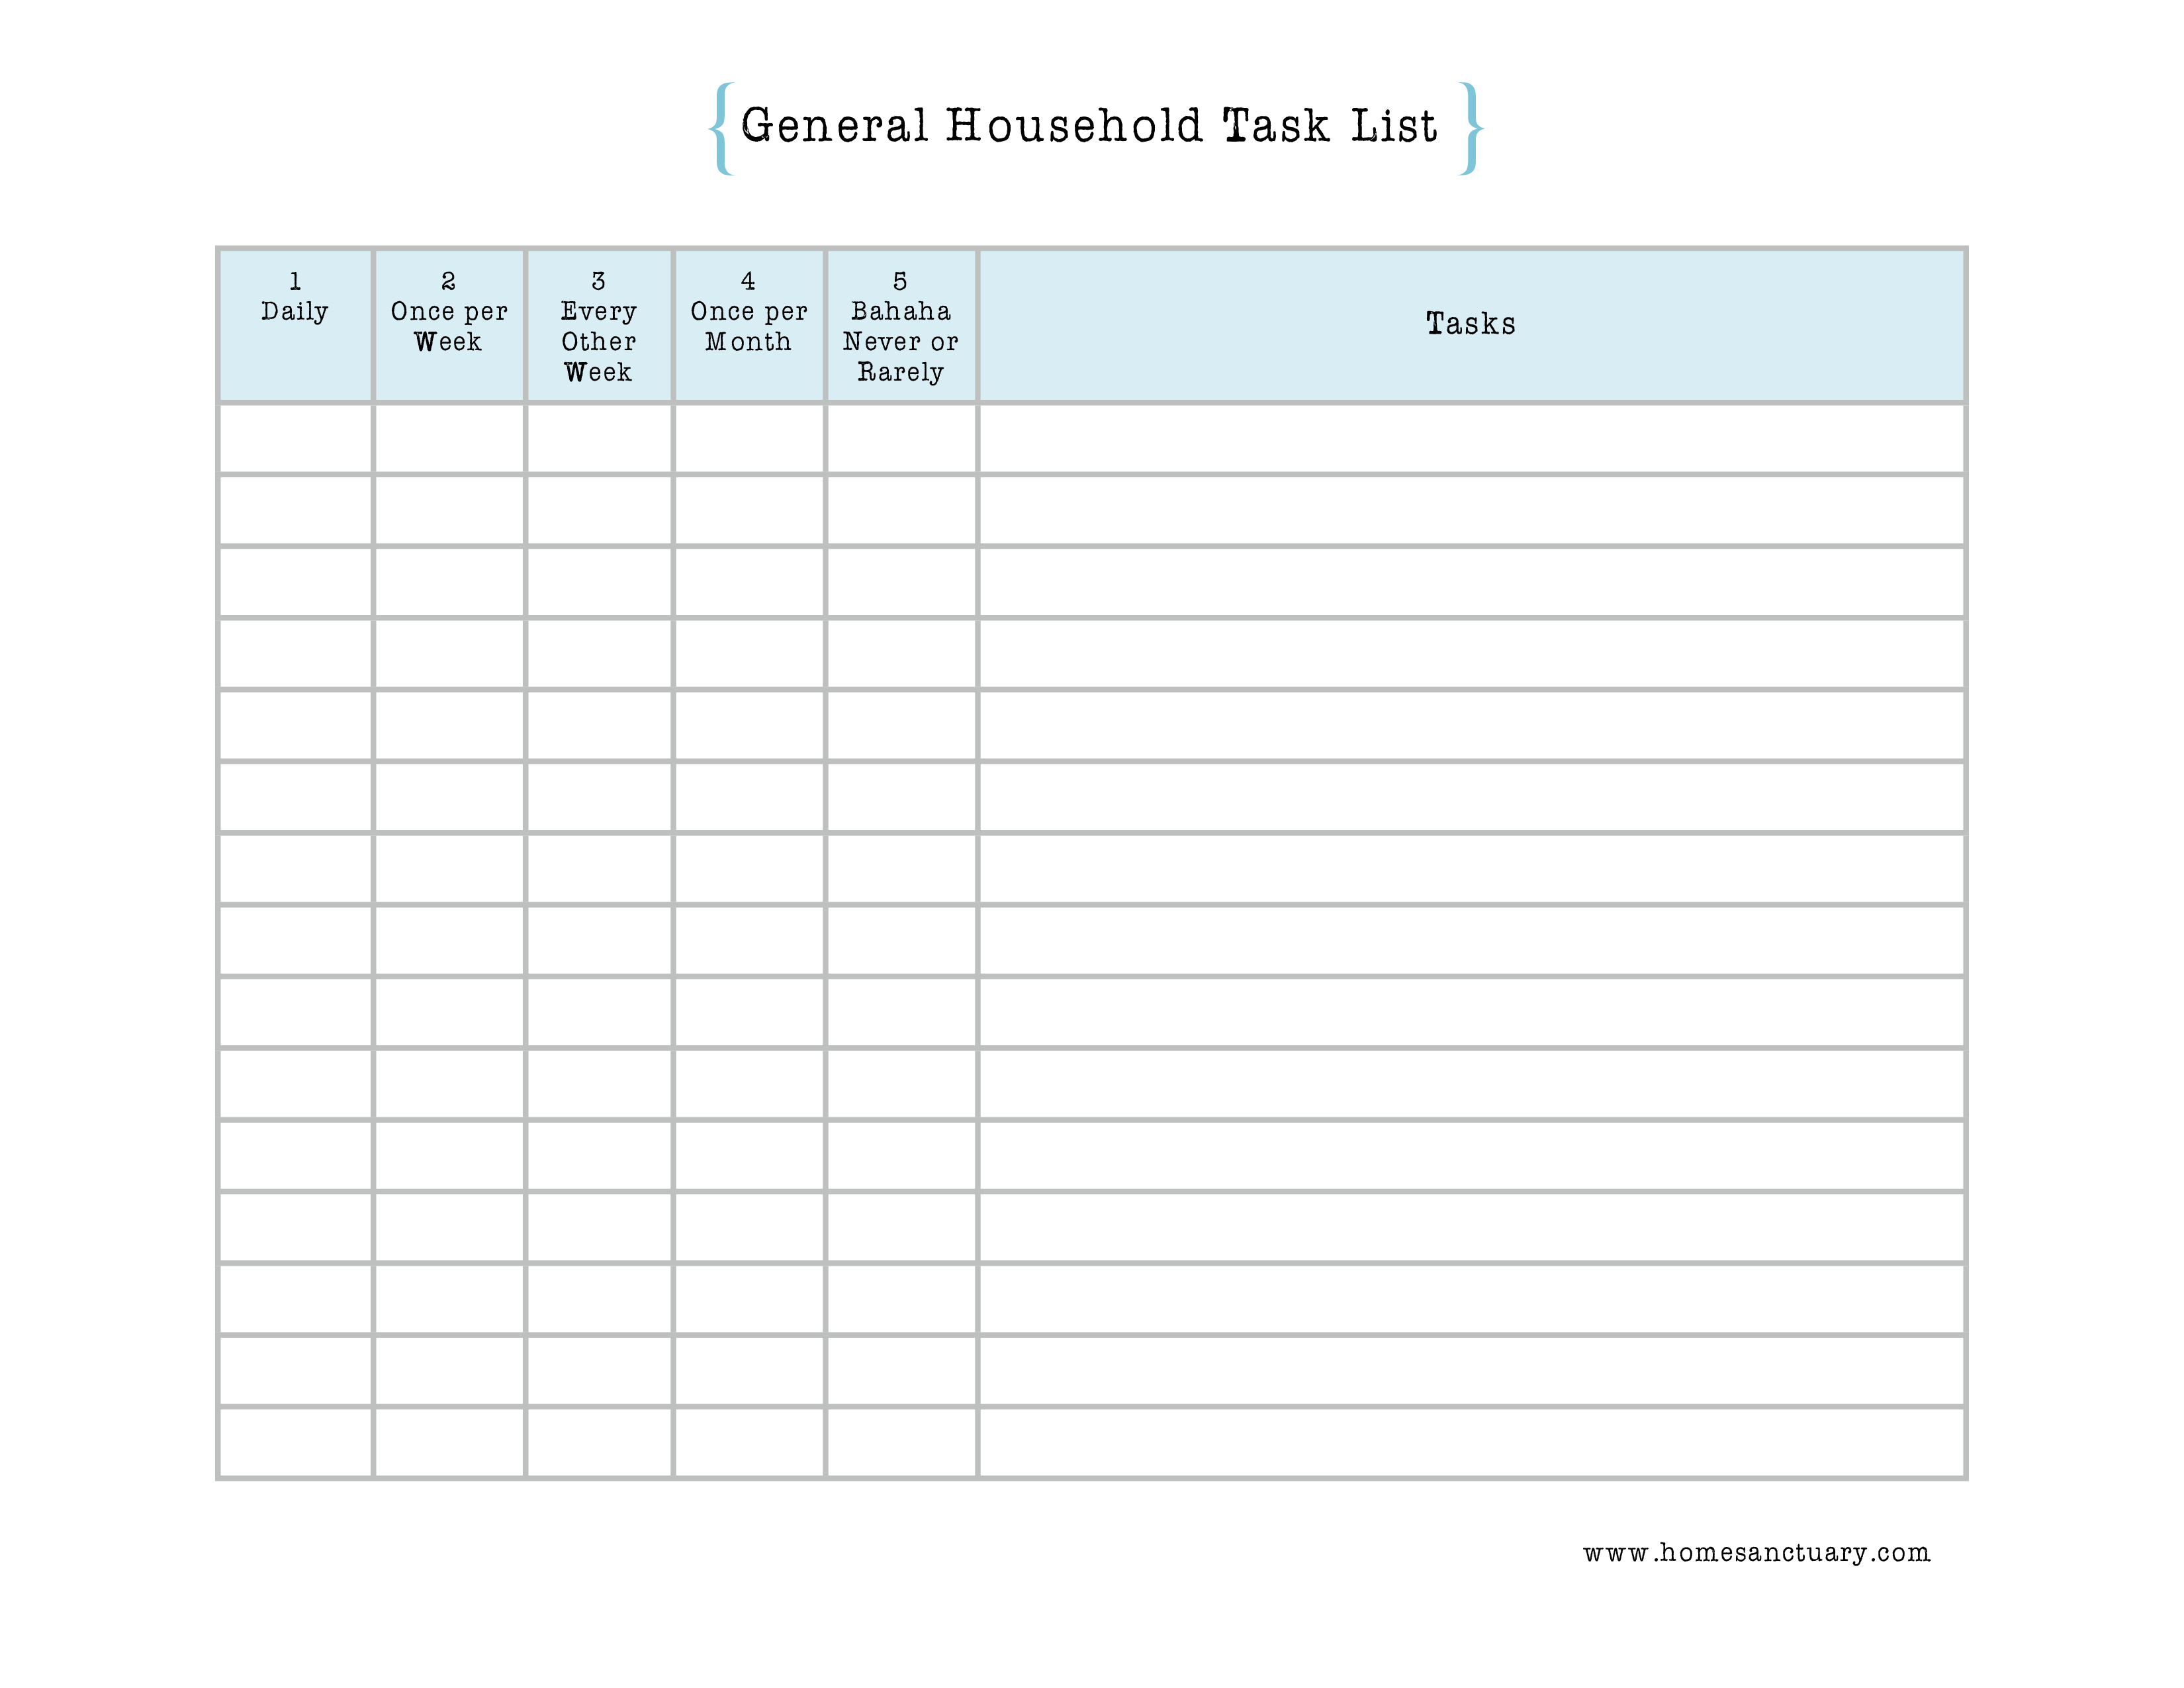 Household Task List main image